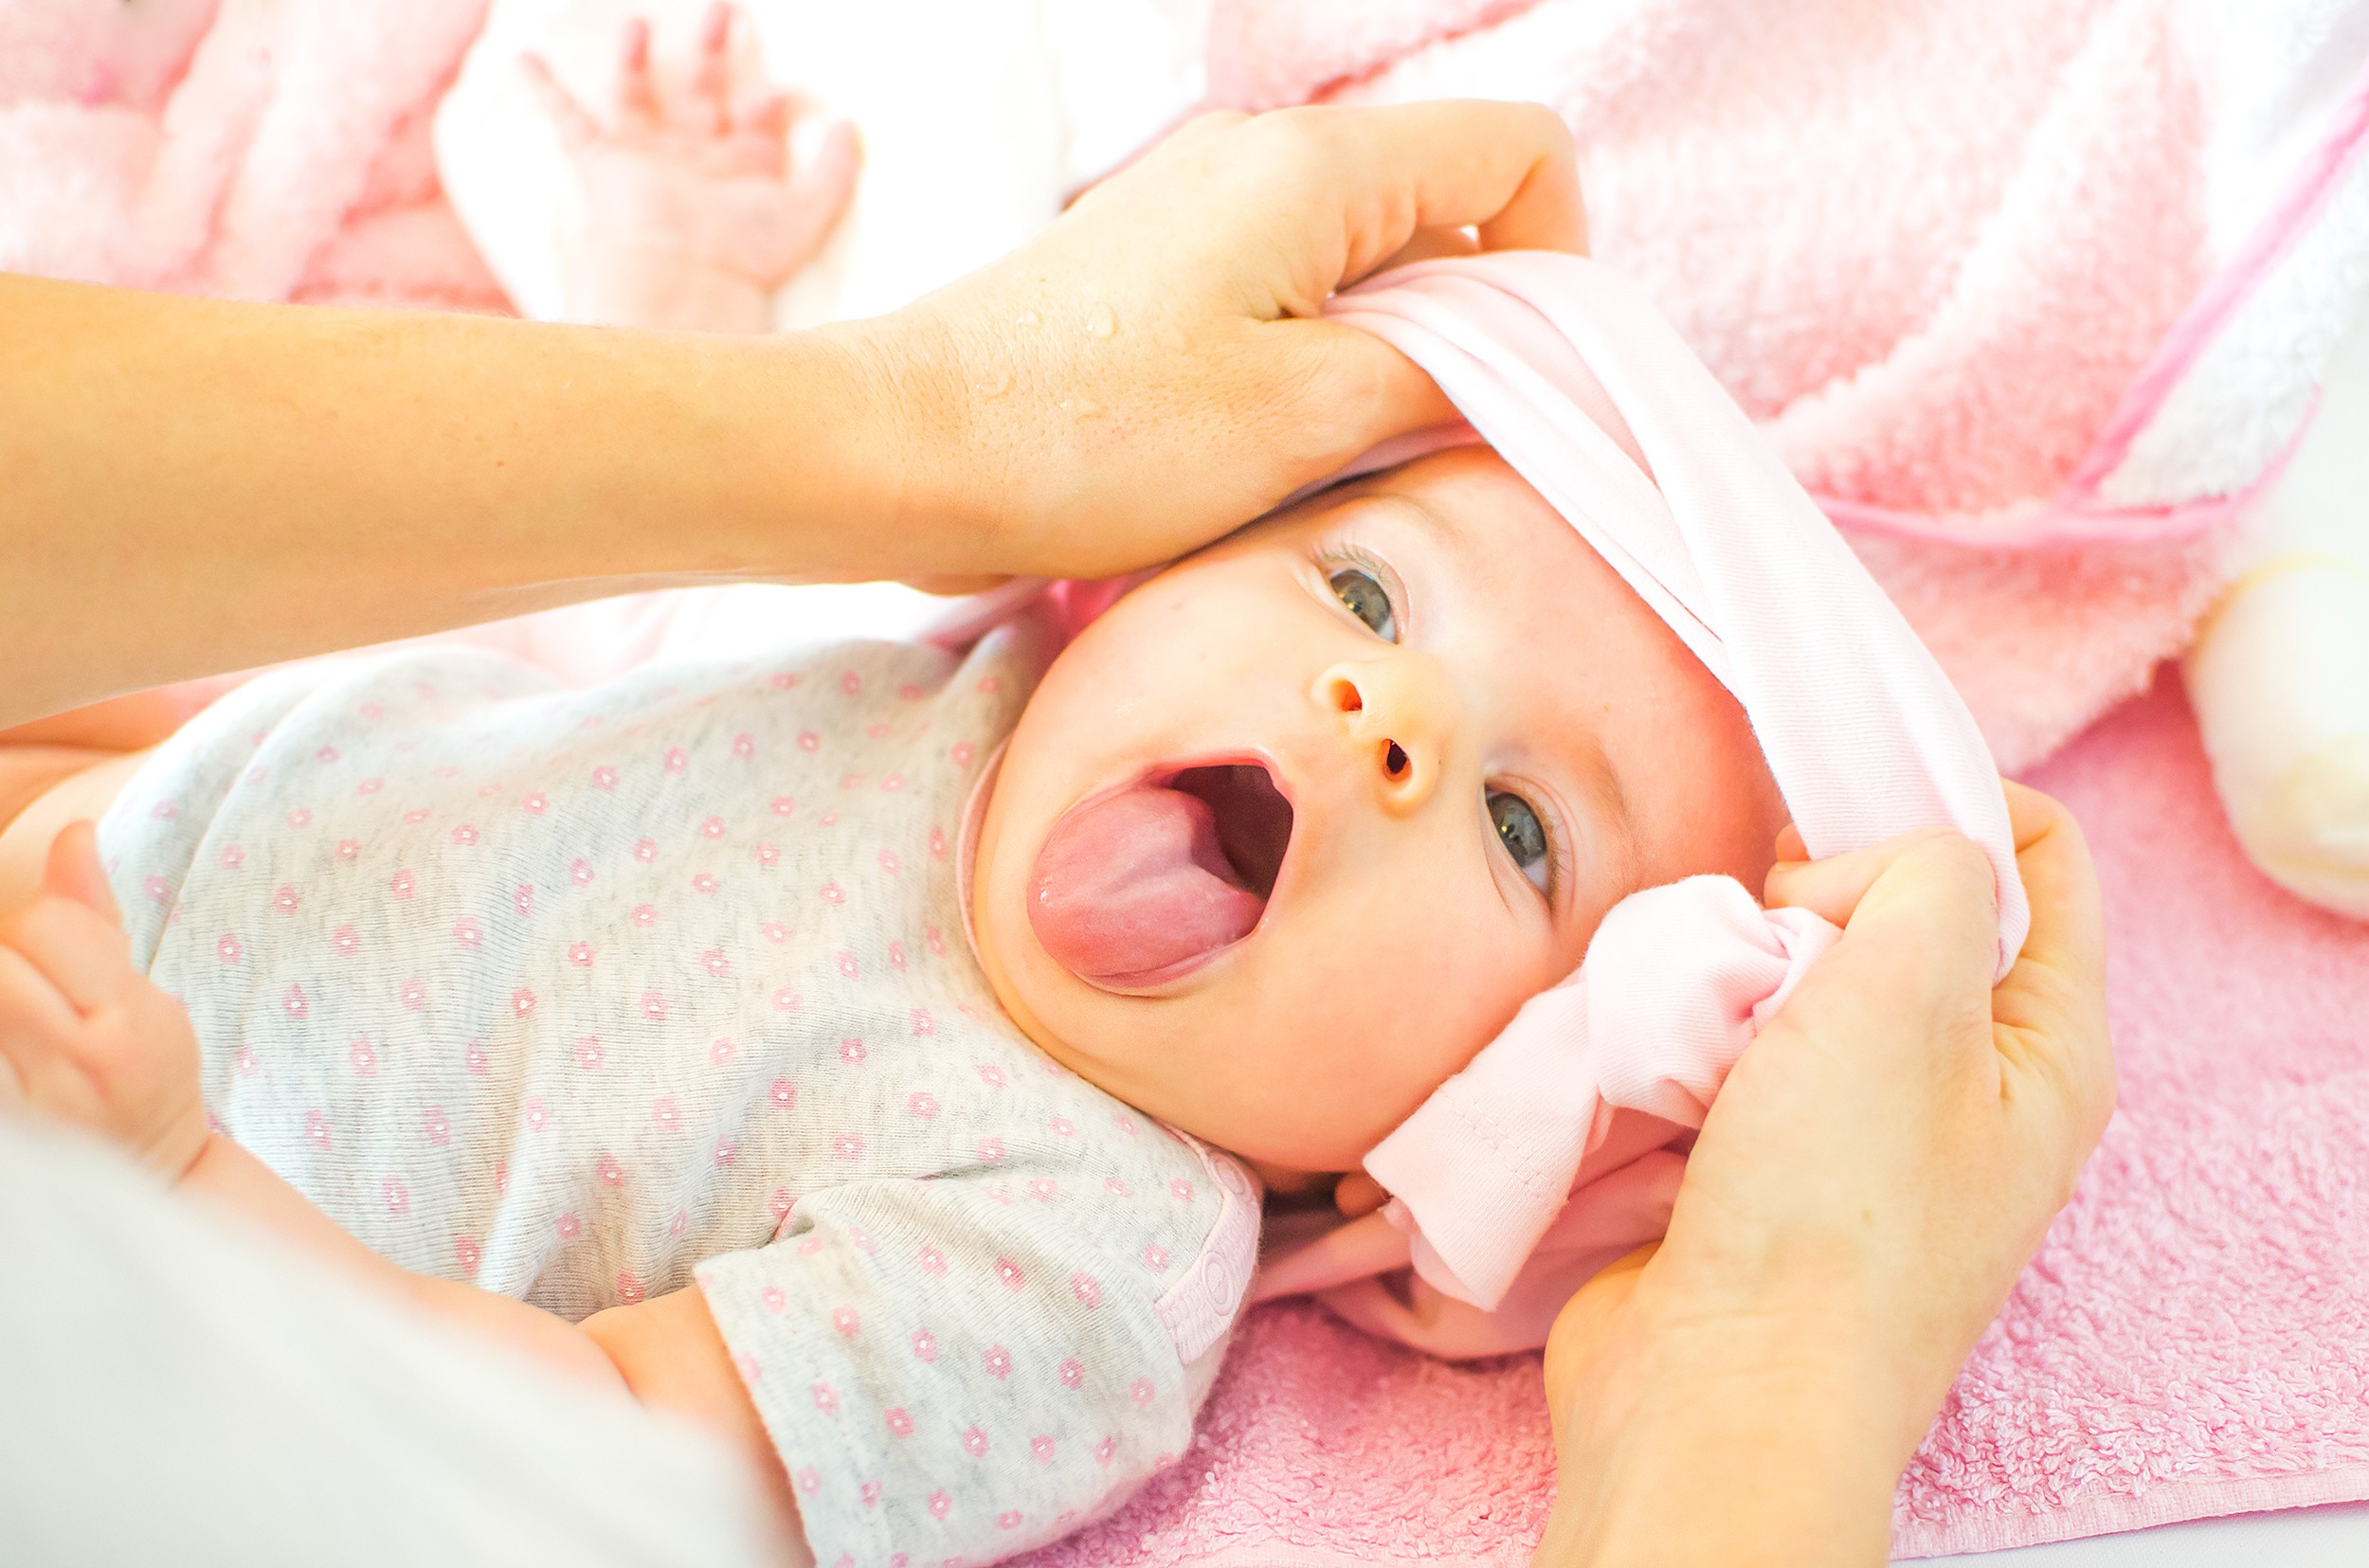 Candidíase em bebê: qual é a causa e o tratamento?